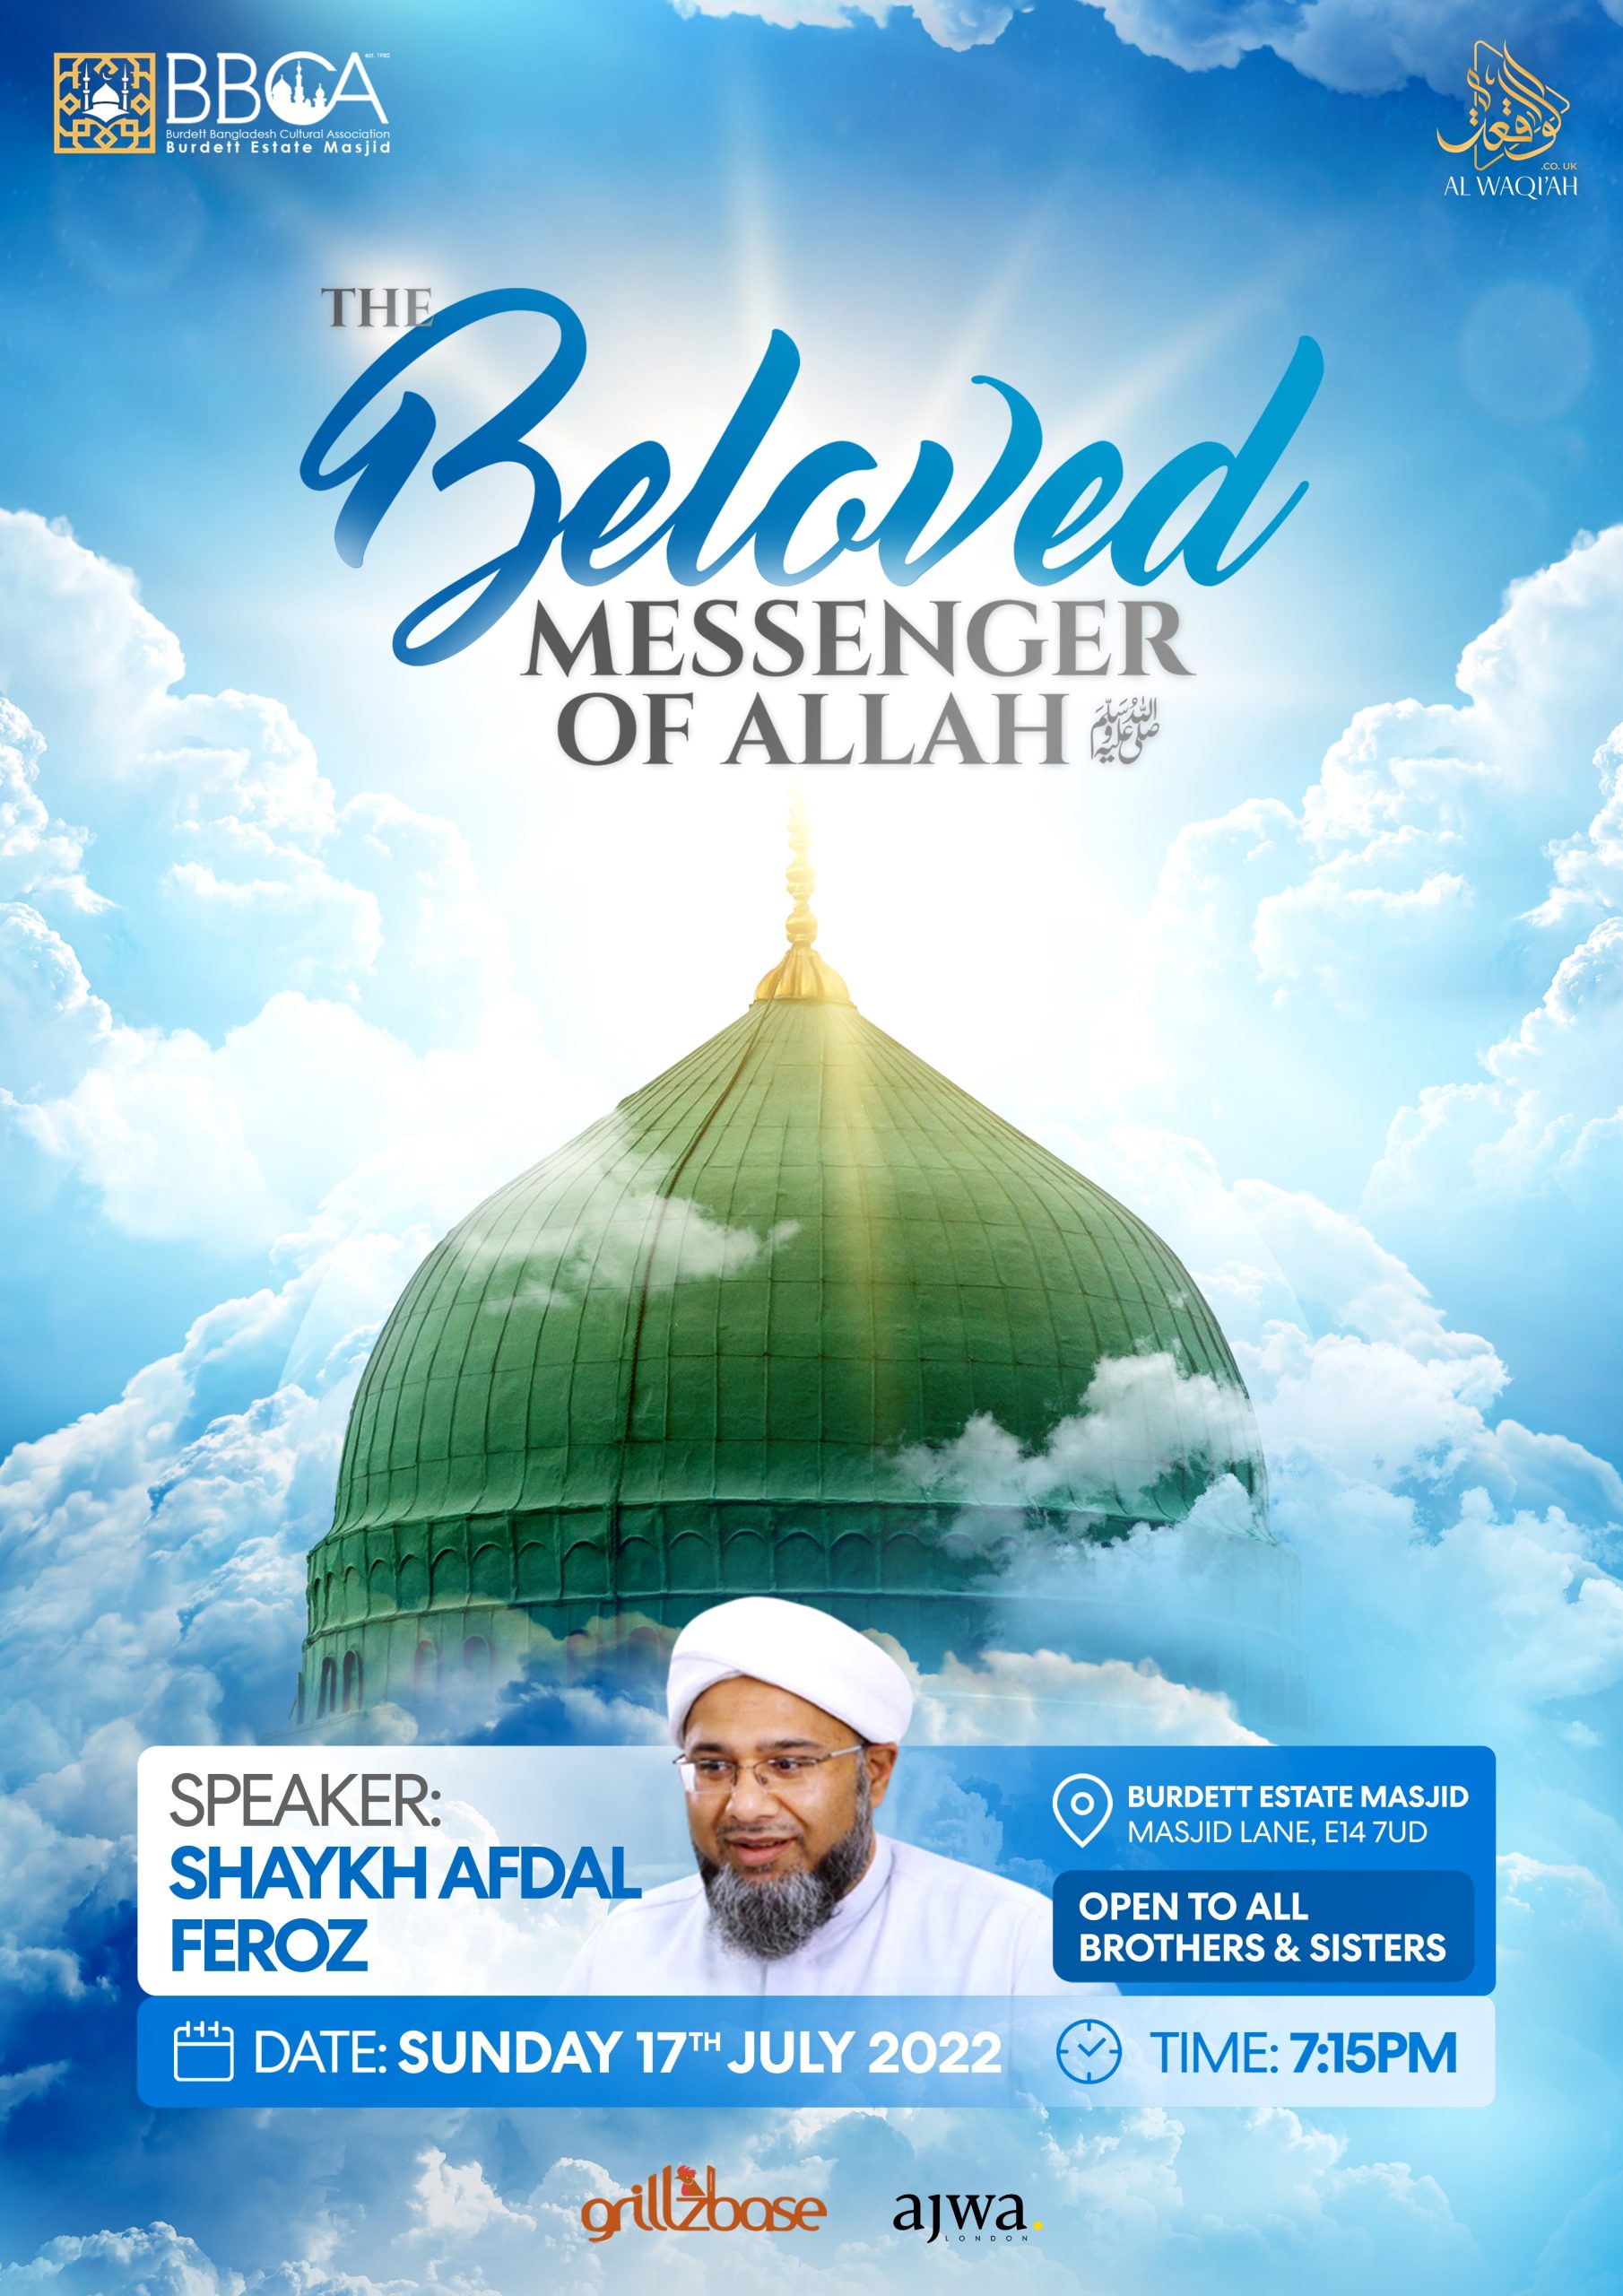 THE BELOVED MESSENGER OF ALLAH ﷺ | Shaykh Afdal Feroz